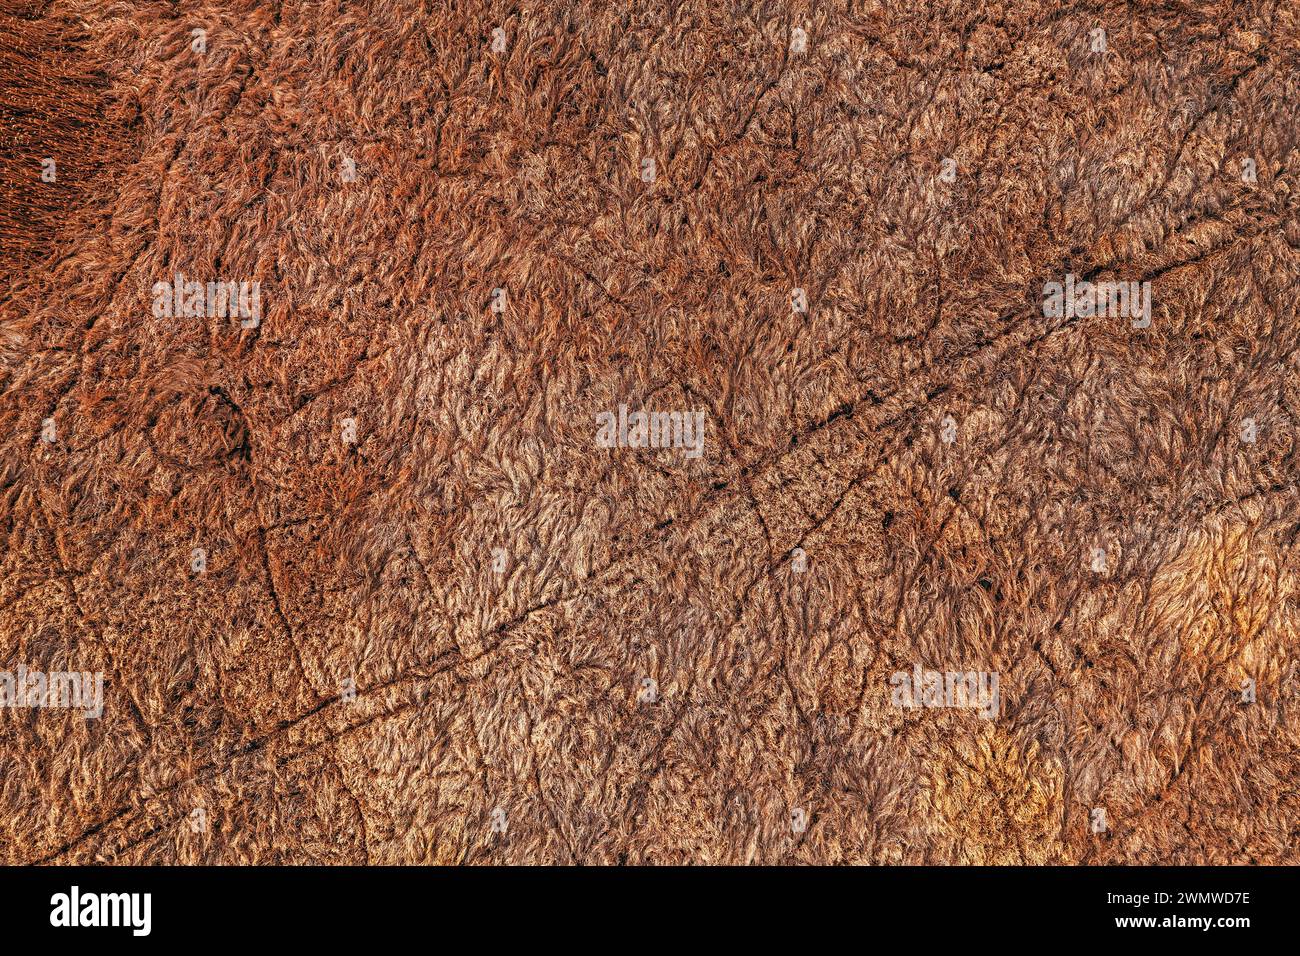 Luftaufnahme von trockenem Wiesengras, Draufsicht Stockfoto